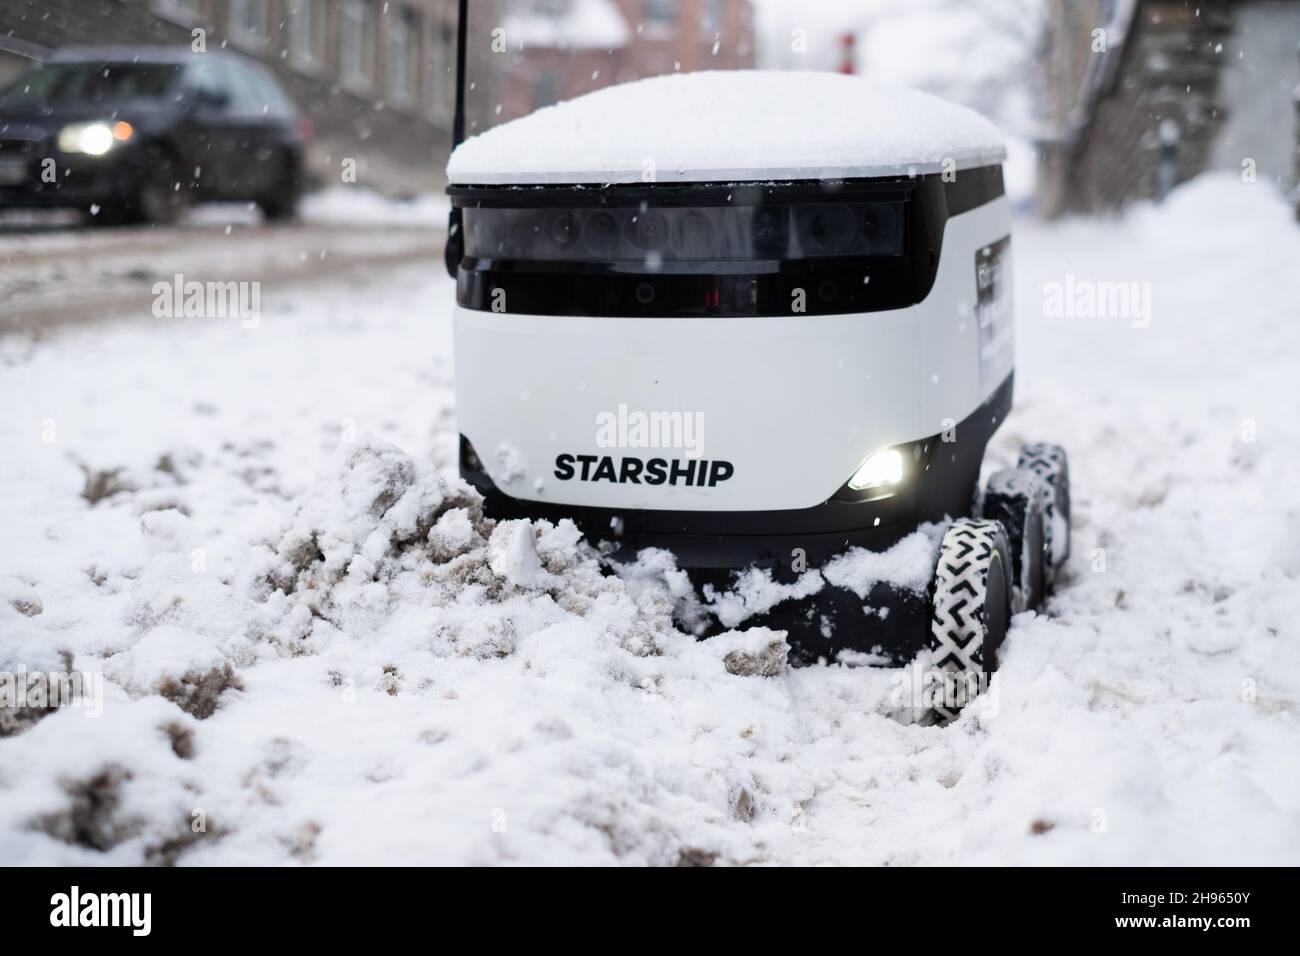 Tallinn, Estland - 4. Dezember 2021: Raumschiff Technologies autonomes Drohnenfahrzeug im Winter im Schnee stecken geblieben. Selbstfahrende kontaktlose Zustellroboter. Stockfoto